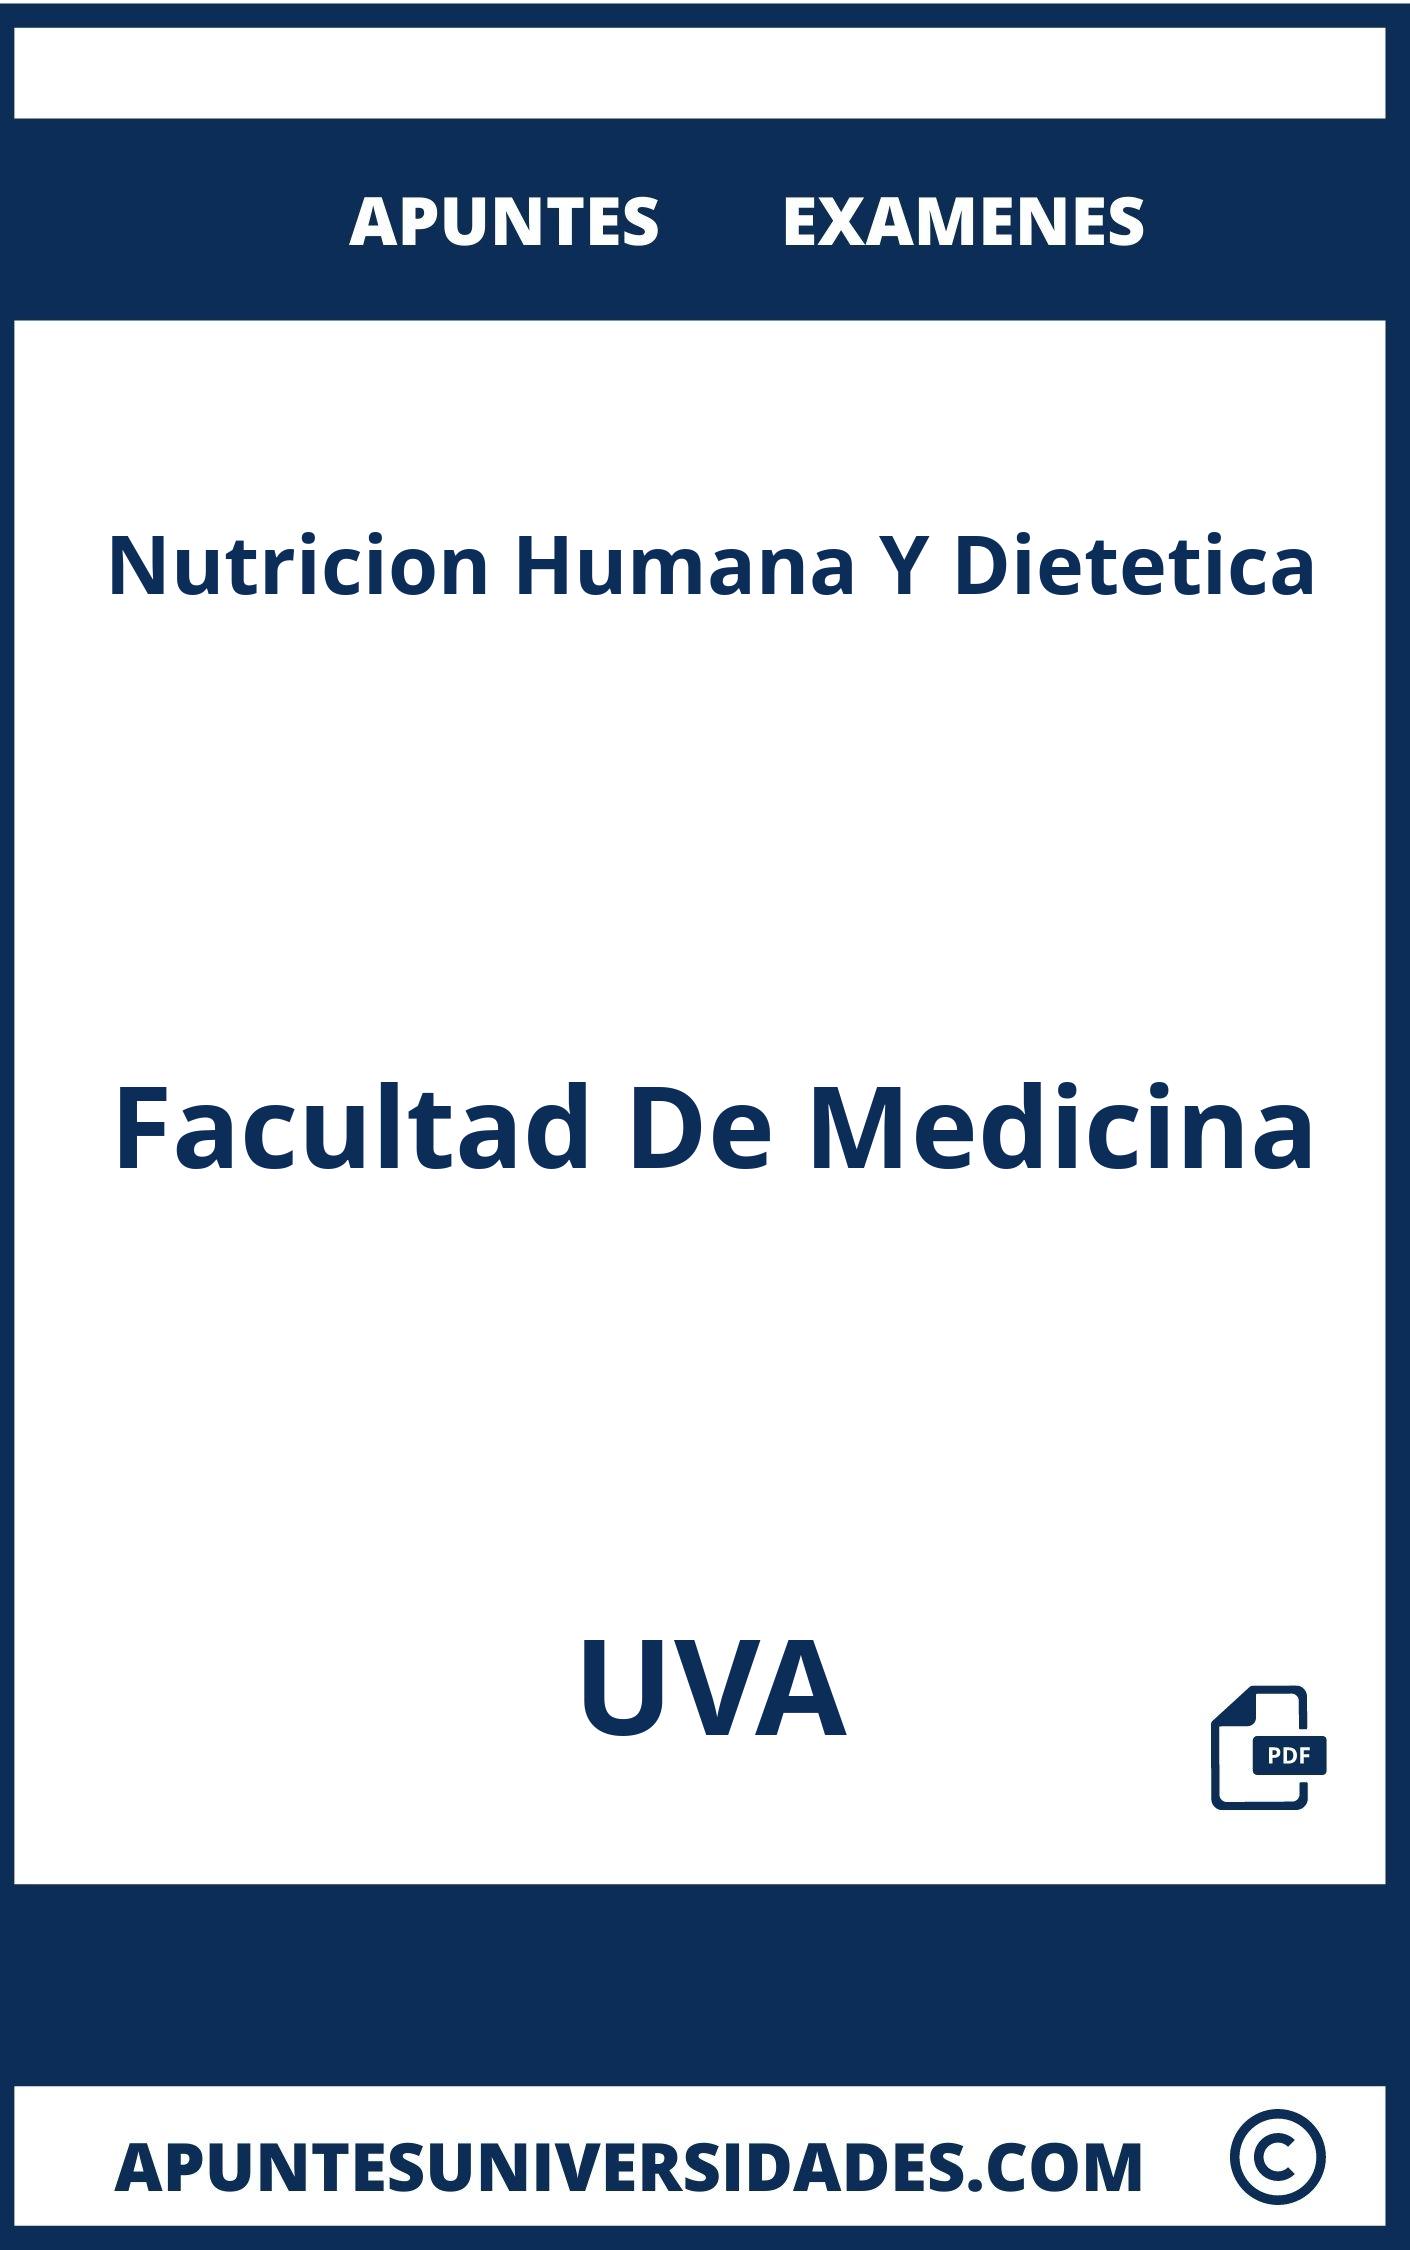 Examenes Apuntes Nutricion Humana Y Dietetica UVA